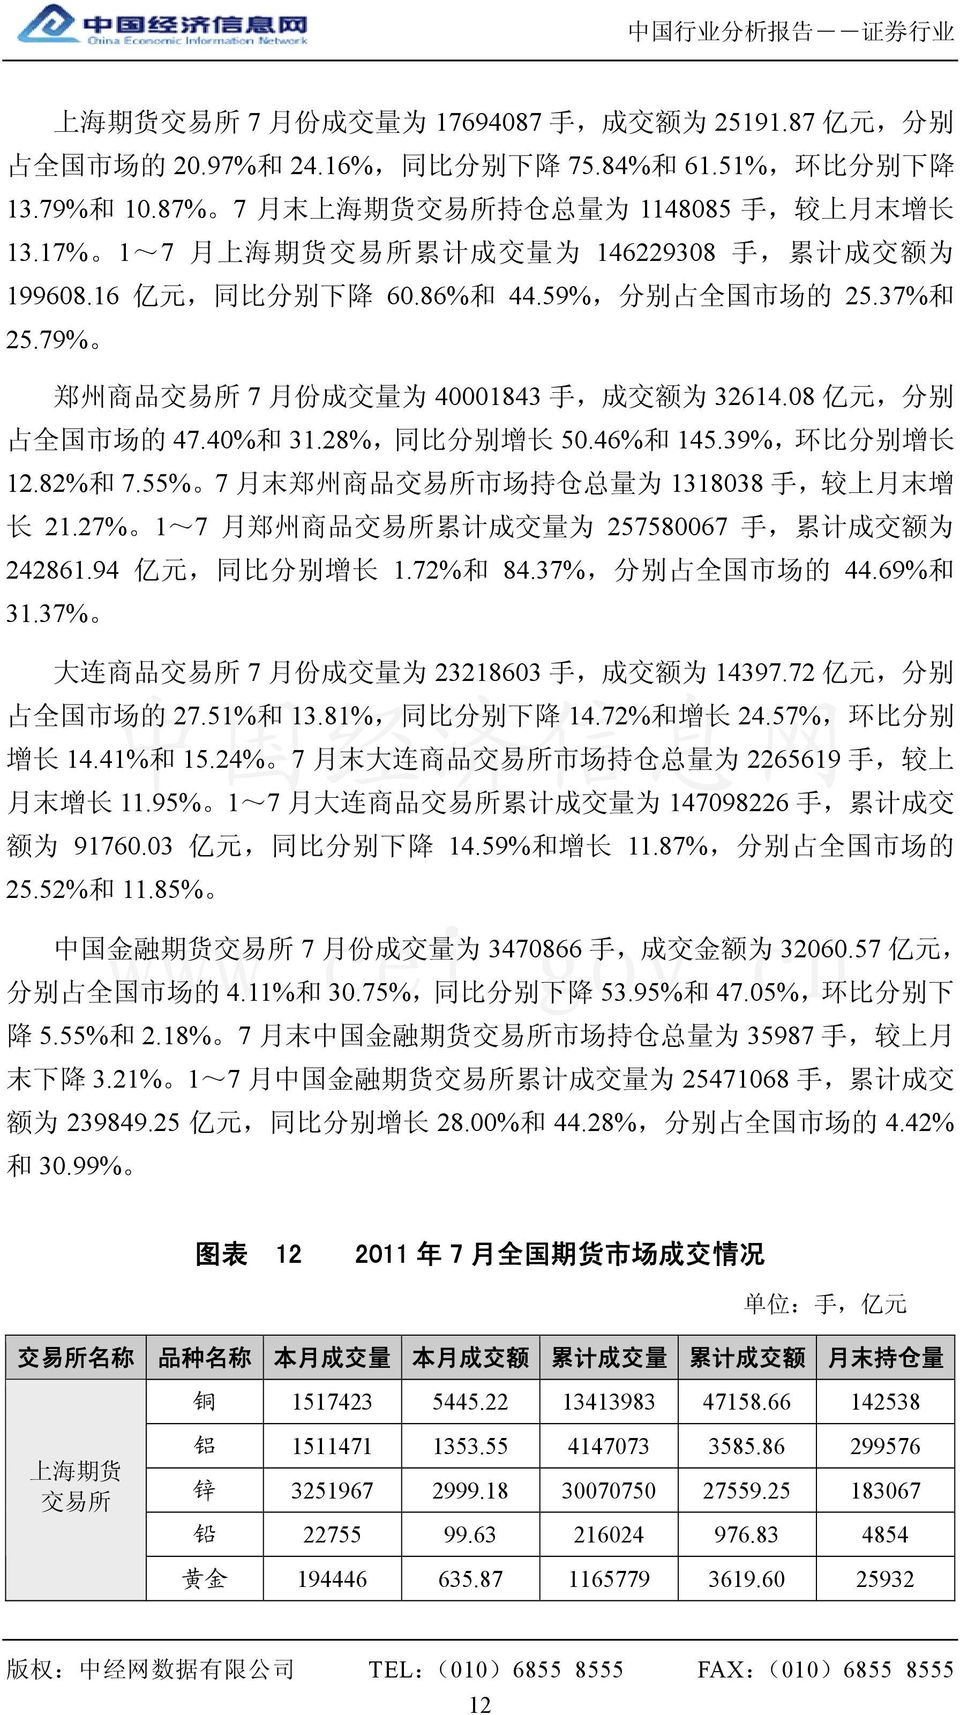 79% 郑 州 商 品 交 易 所 7 月 份 成 交 量 为 40001843 手, 成 交 额 为 32614.08 亿 元, 分 别 占 全 国 市 场 的 47.40% 和 31.28%, 同 比 分 别 增 长 50.46% 和 145.39%, 环 比 分 别 增 长 12.82% 和 7.